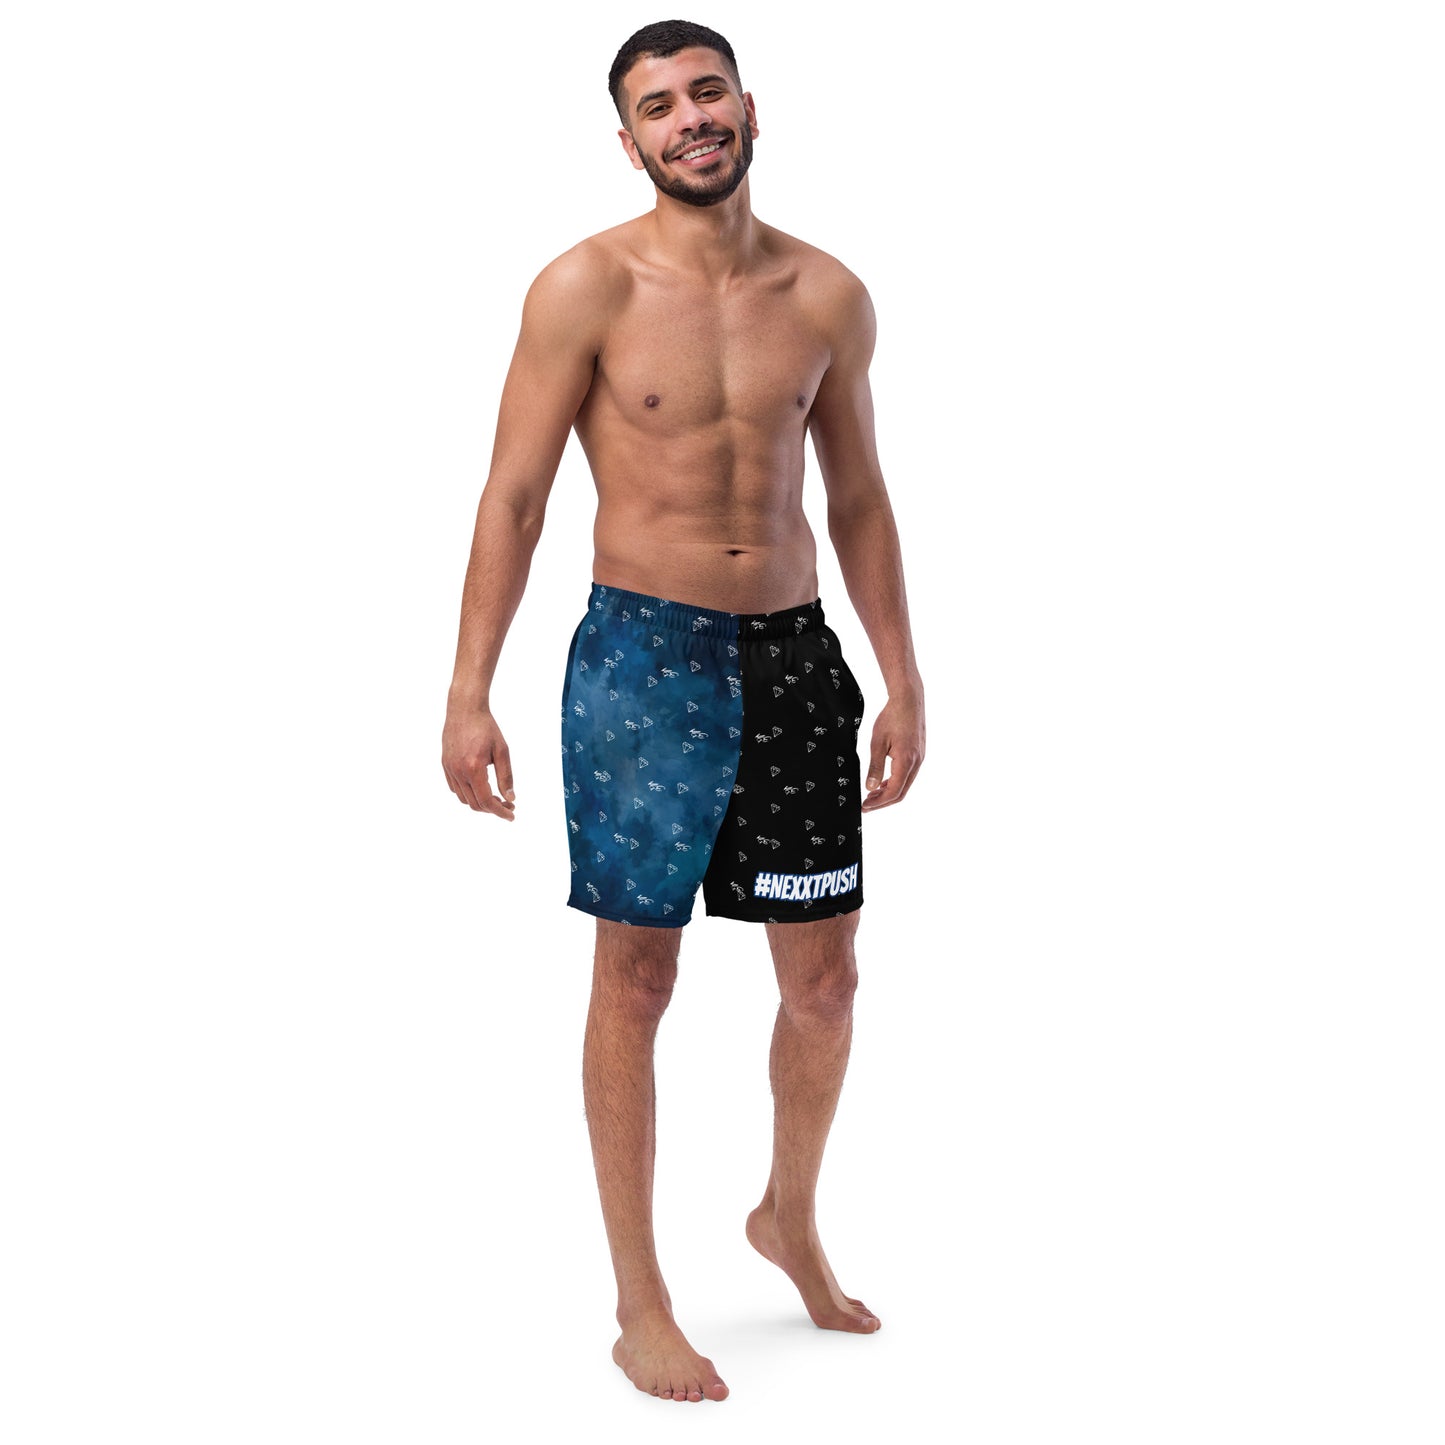 (New) #NEXTPUSH Eco Men's swim trunks